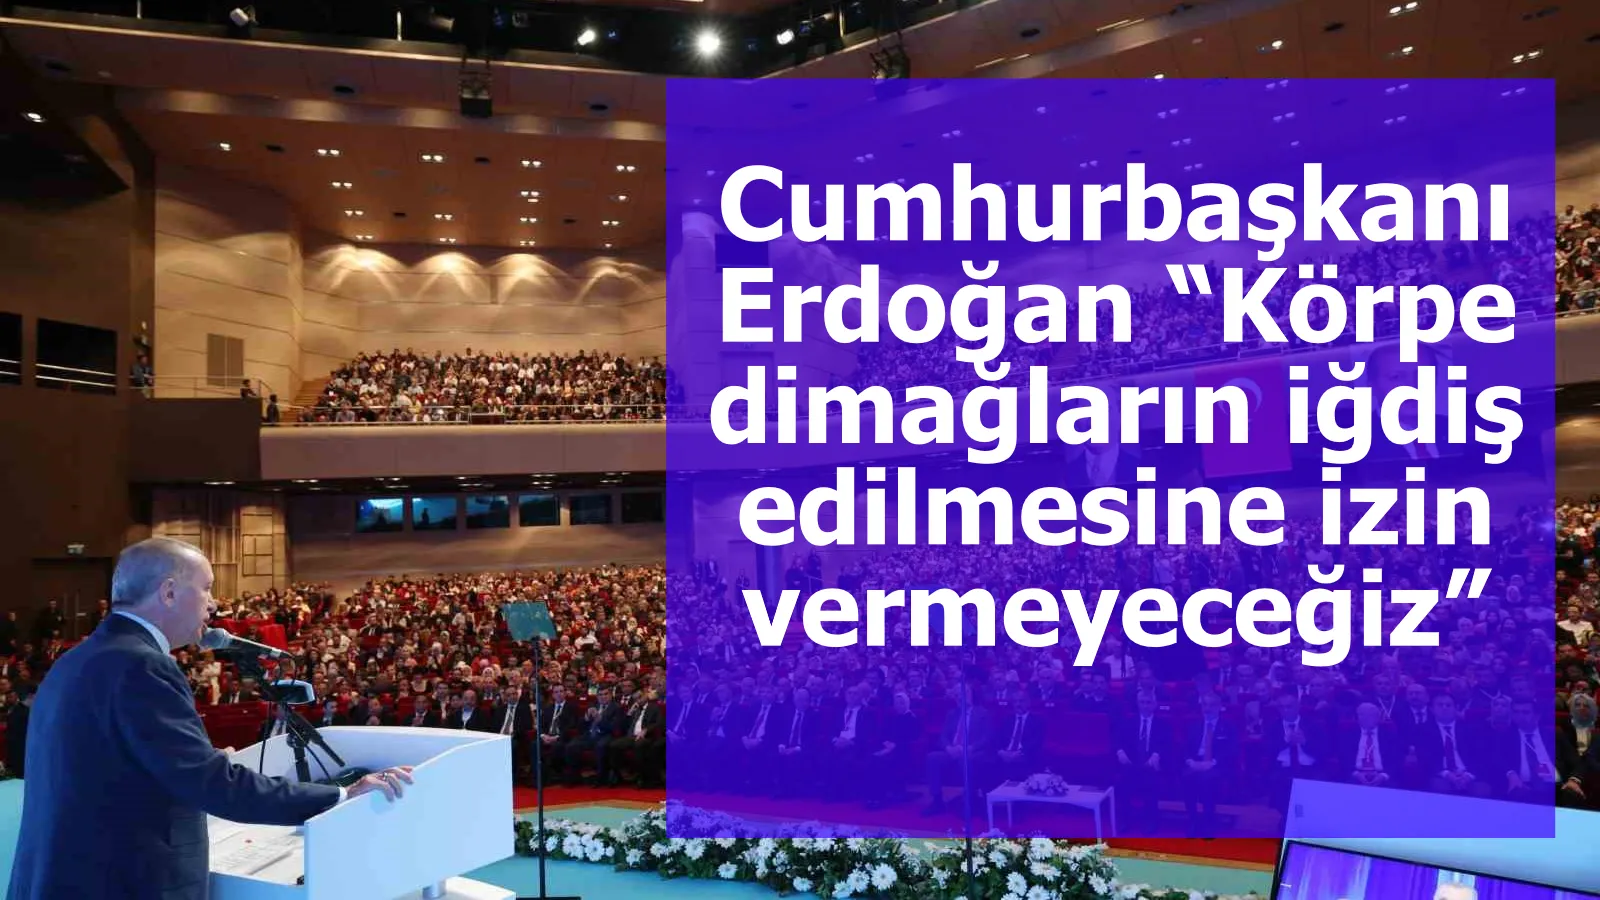 Cumhurbaşkanı Erdoğan “Körpe dimağların iğdiş edilmesine izin vermeyeceğiz”